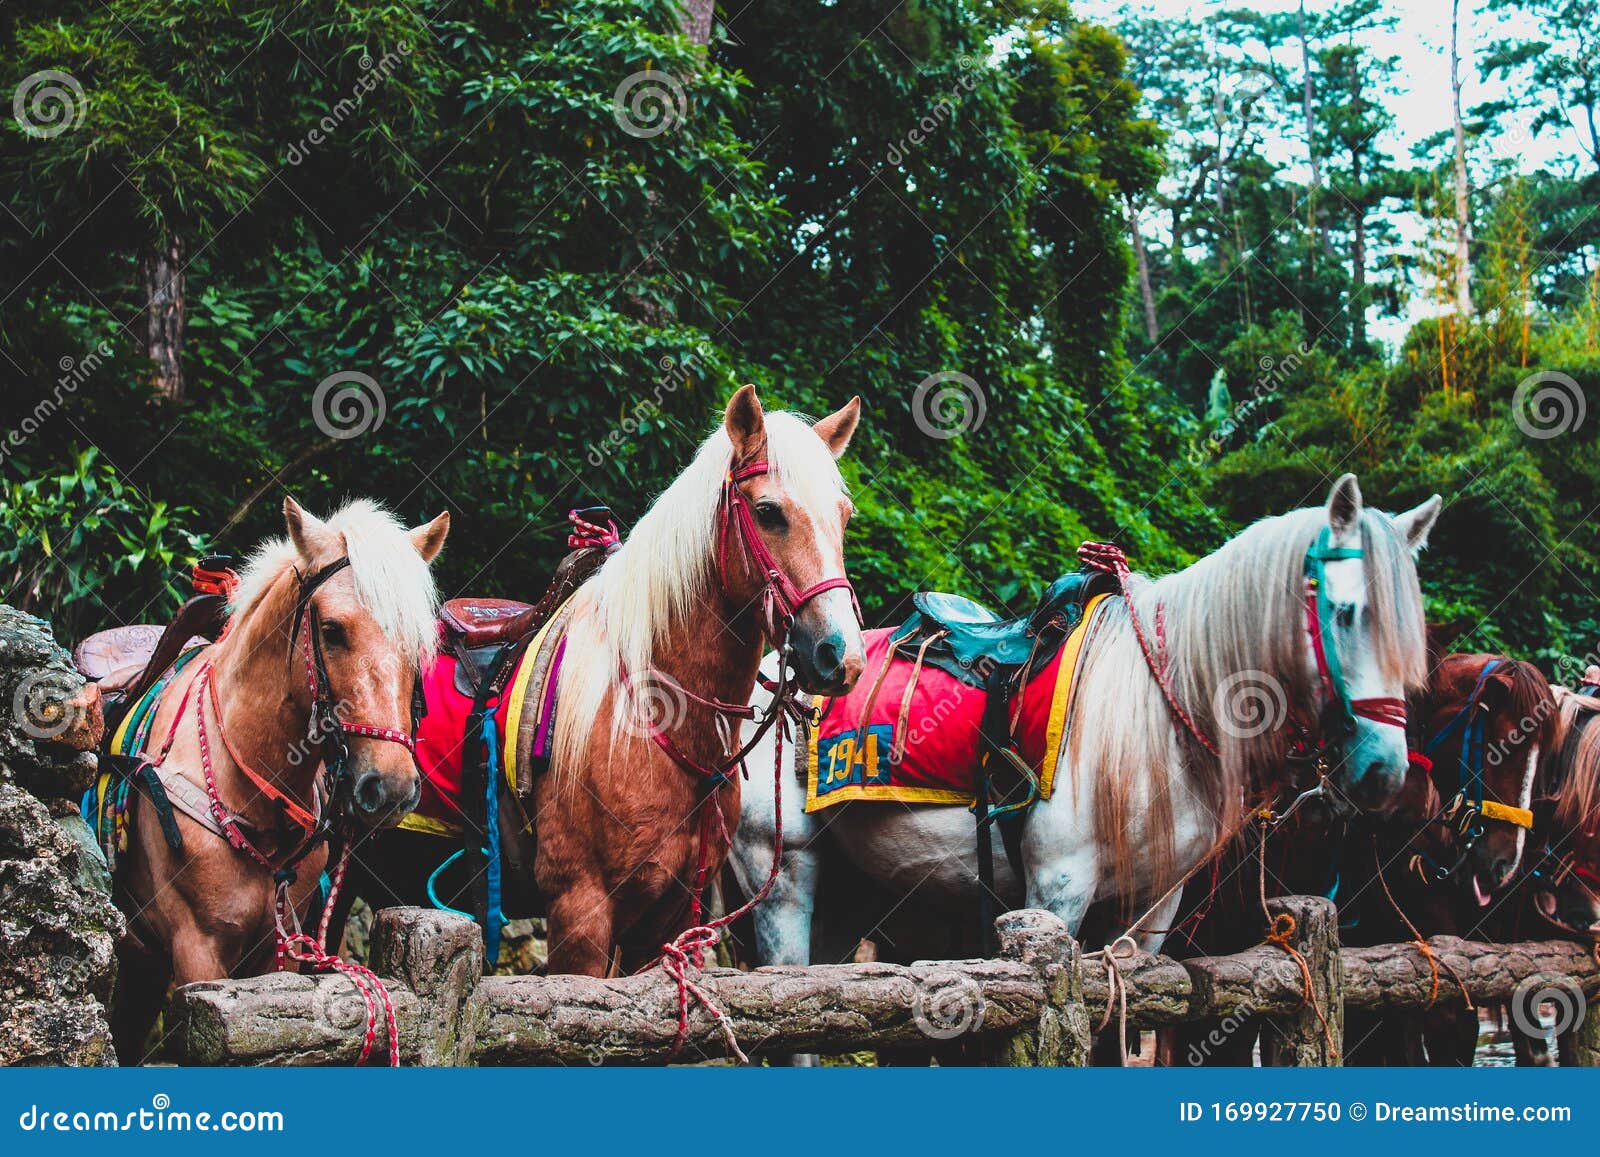 baguio tourist spot horse